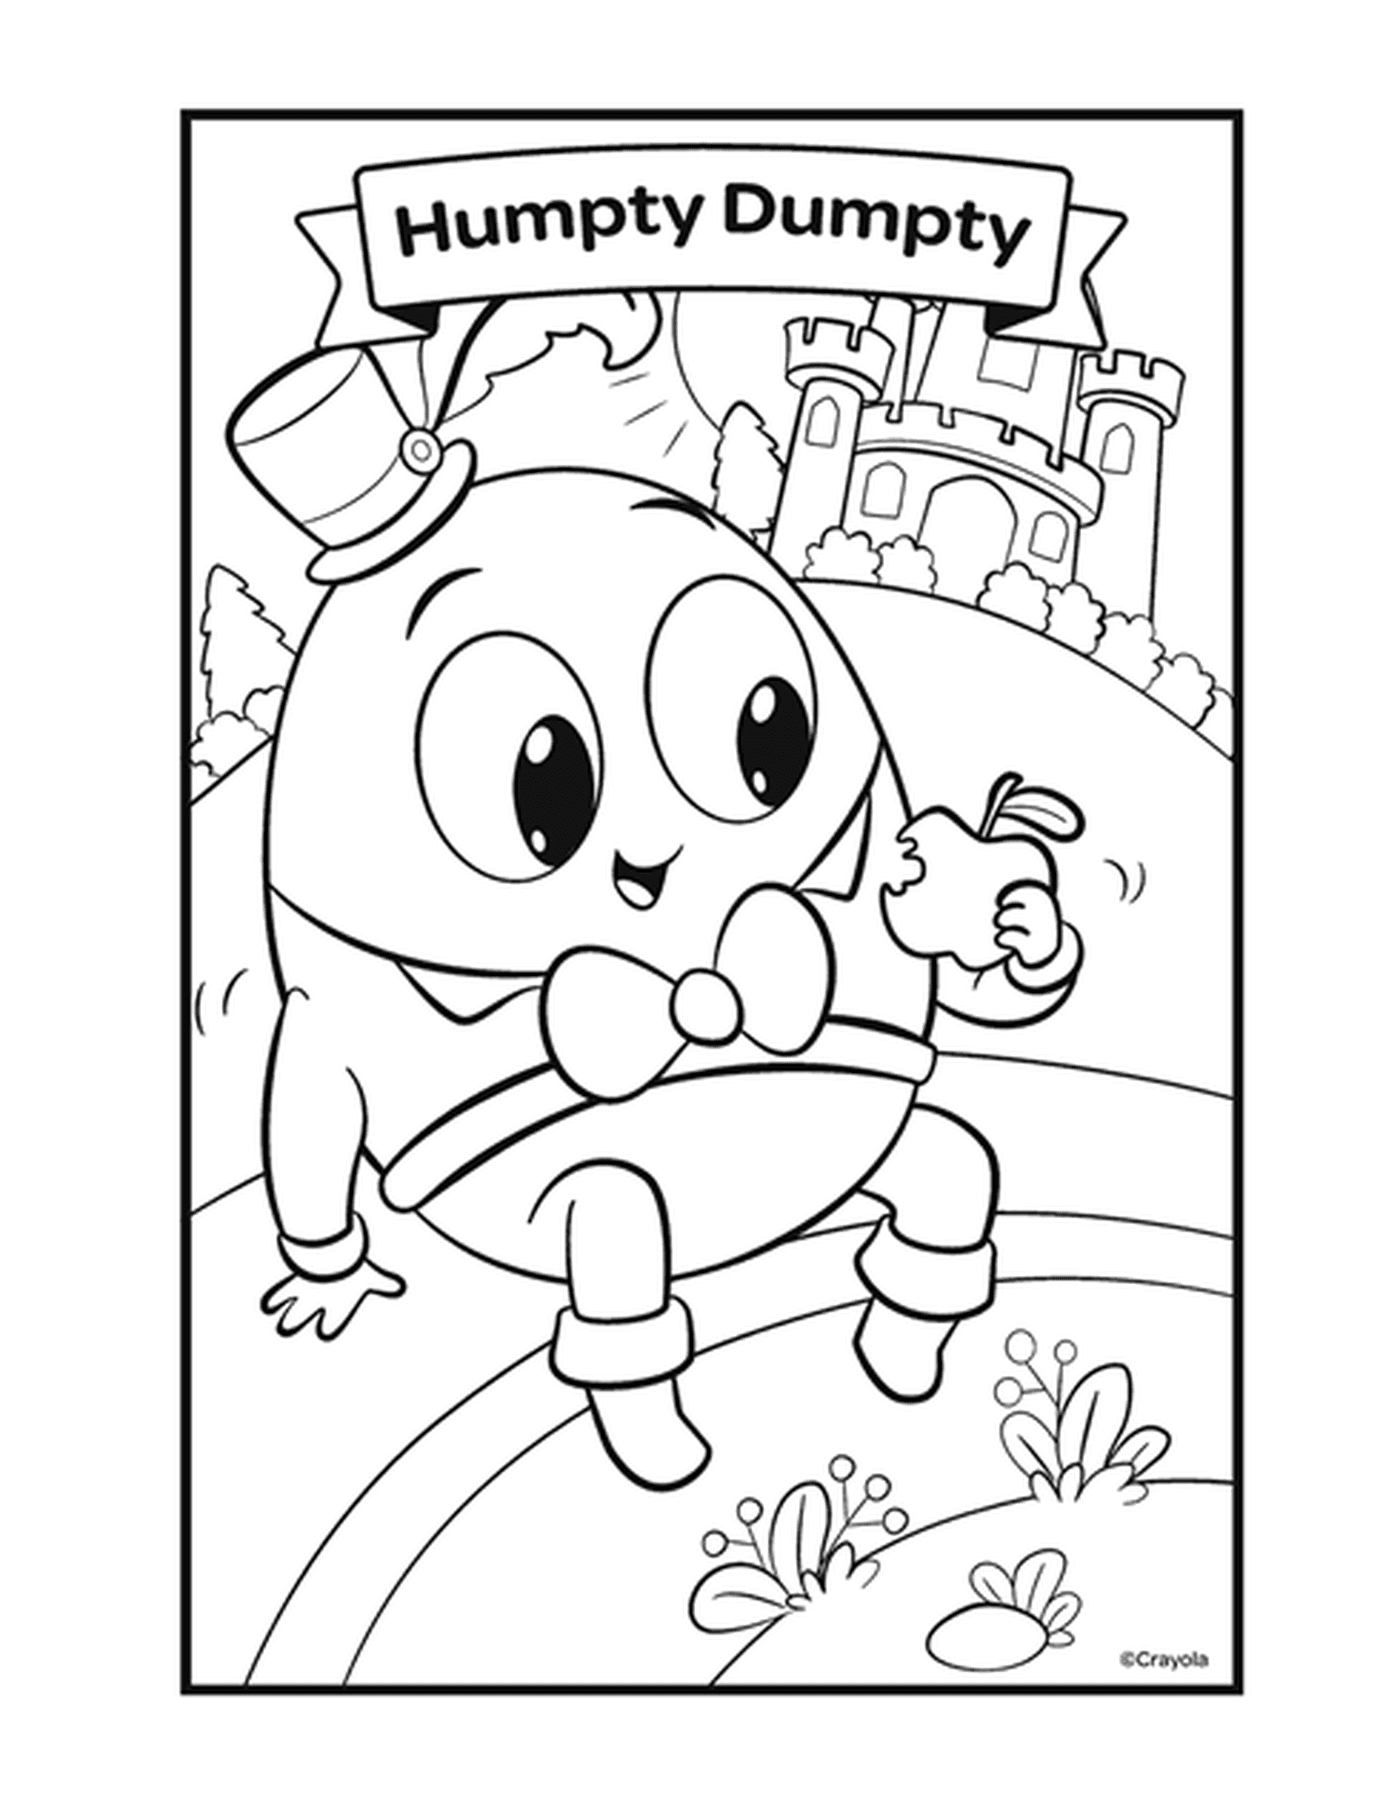  La figura Humpty Dumpty con un carácter en forma de huevo 